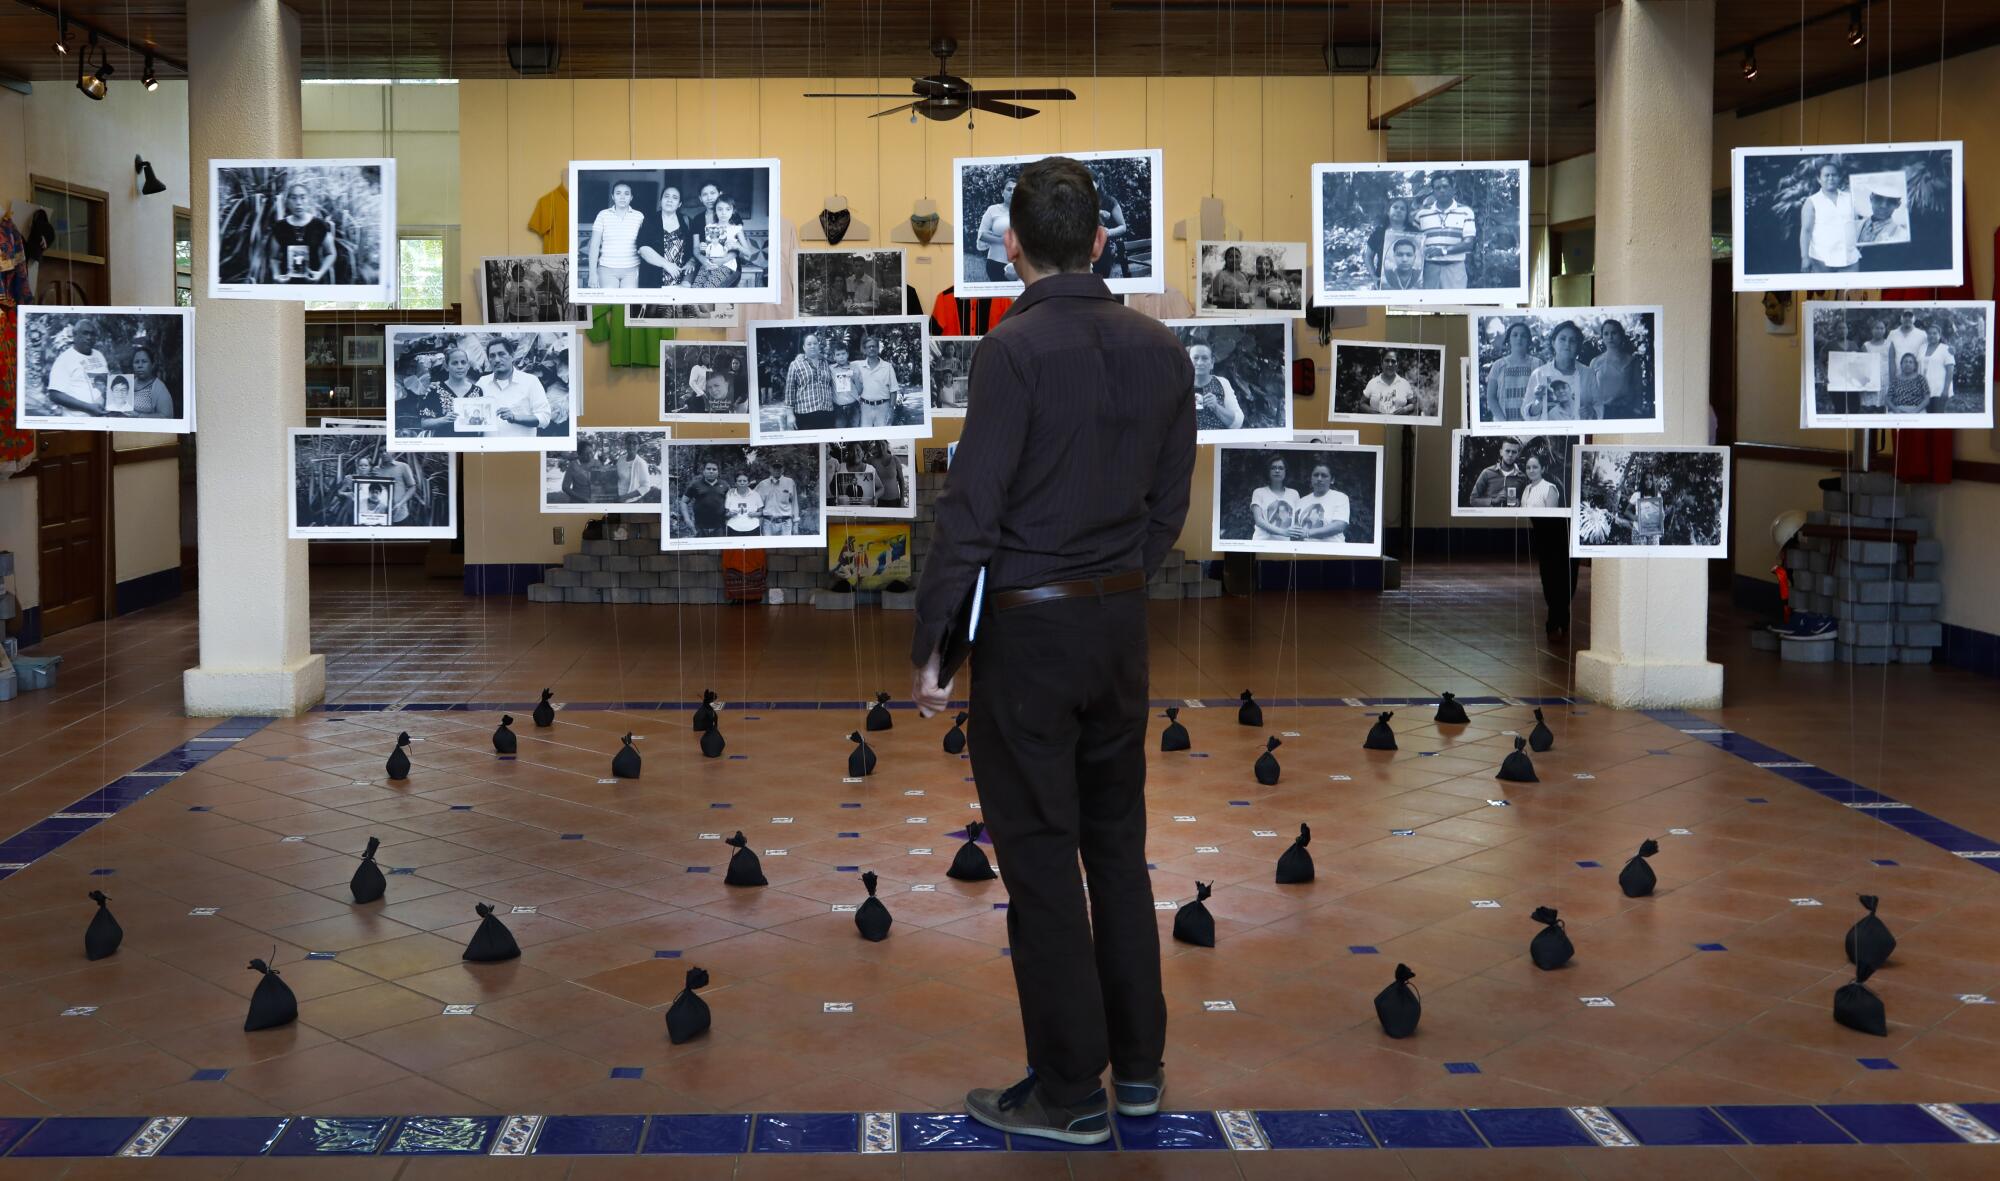 Los efectos personales y las fotos de los muertos durante las protestas en favor de la democracia se exhiben en el Museo de la Memoria Contra la Impunidad de la Universidad Centroamericana en Managua.